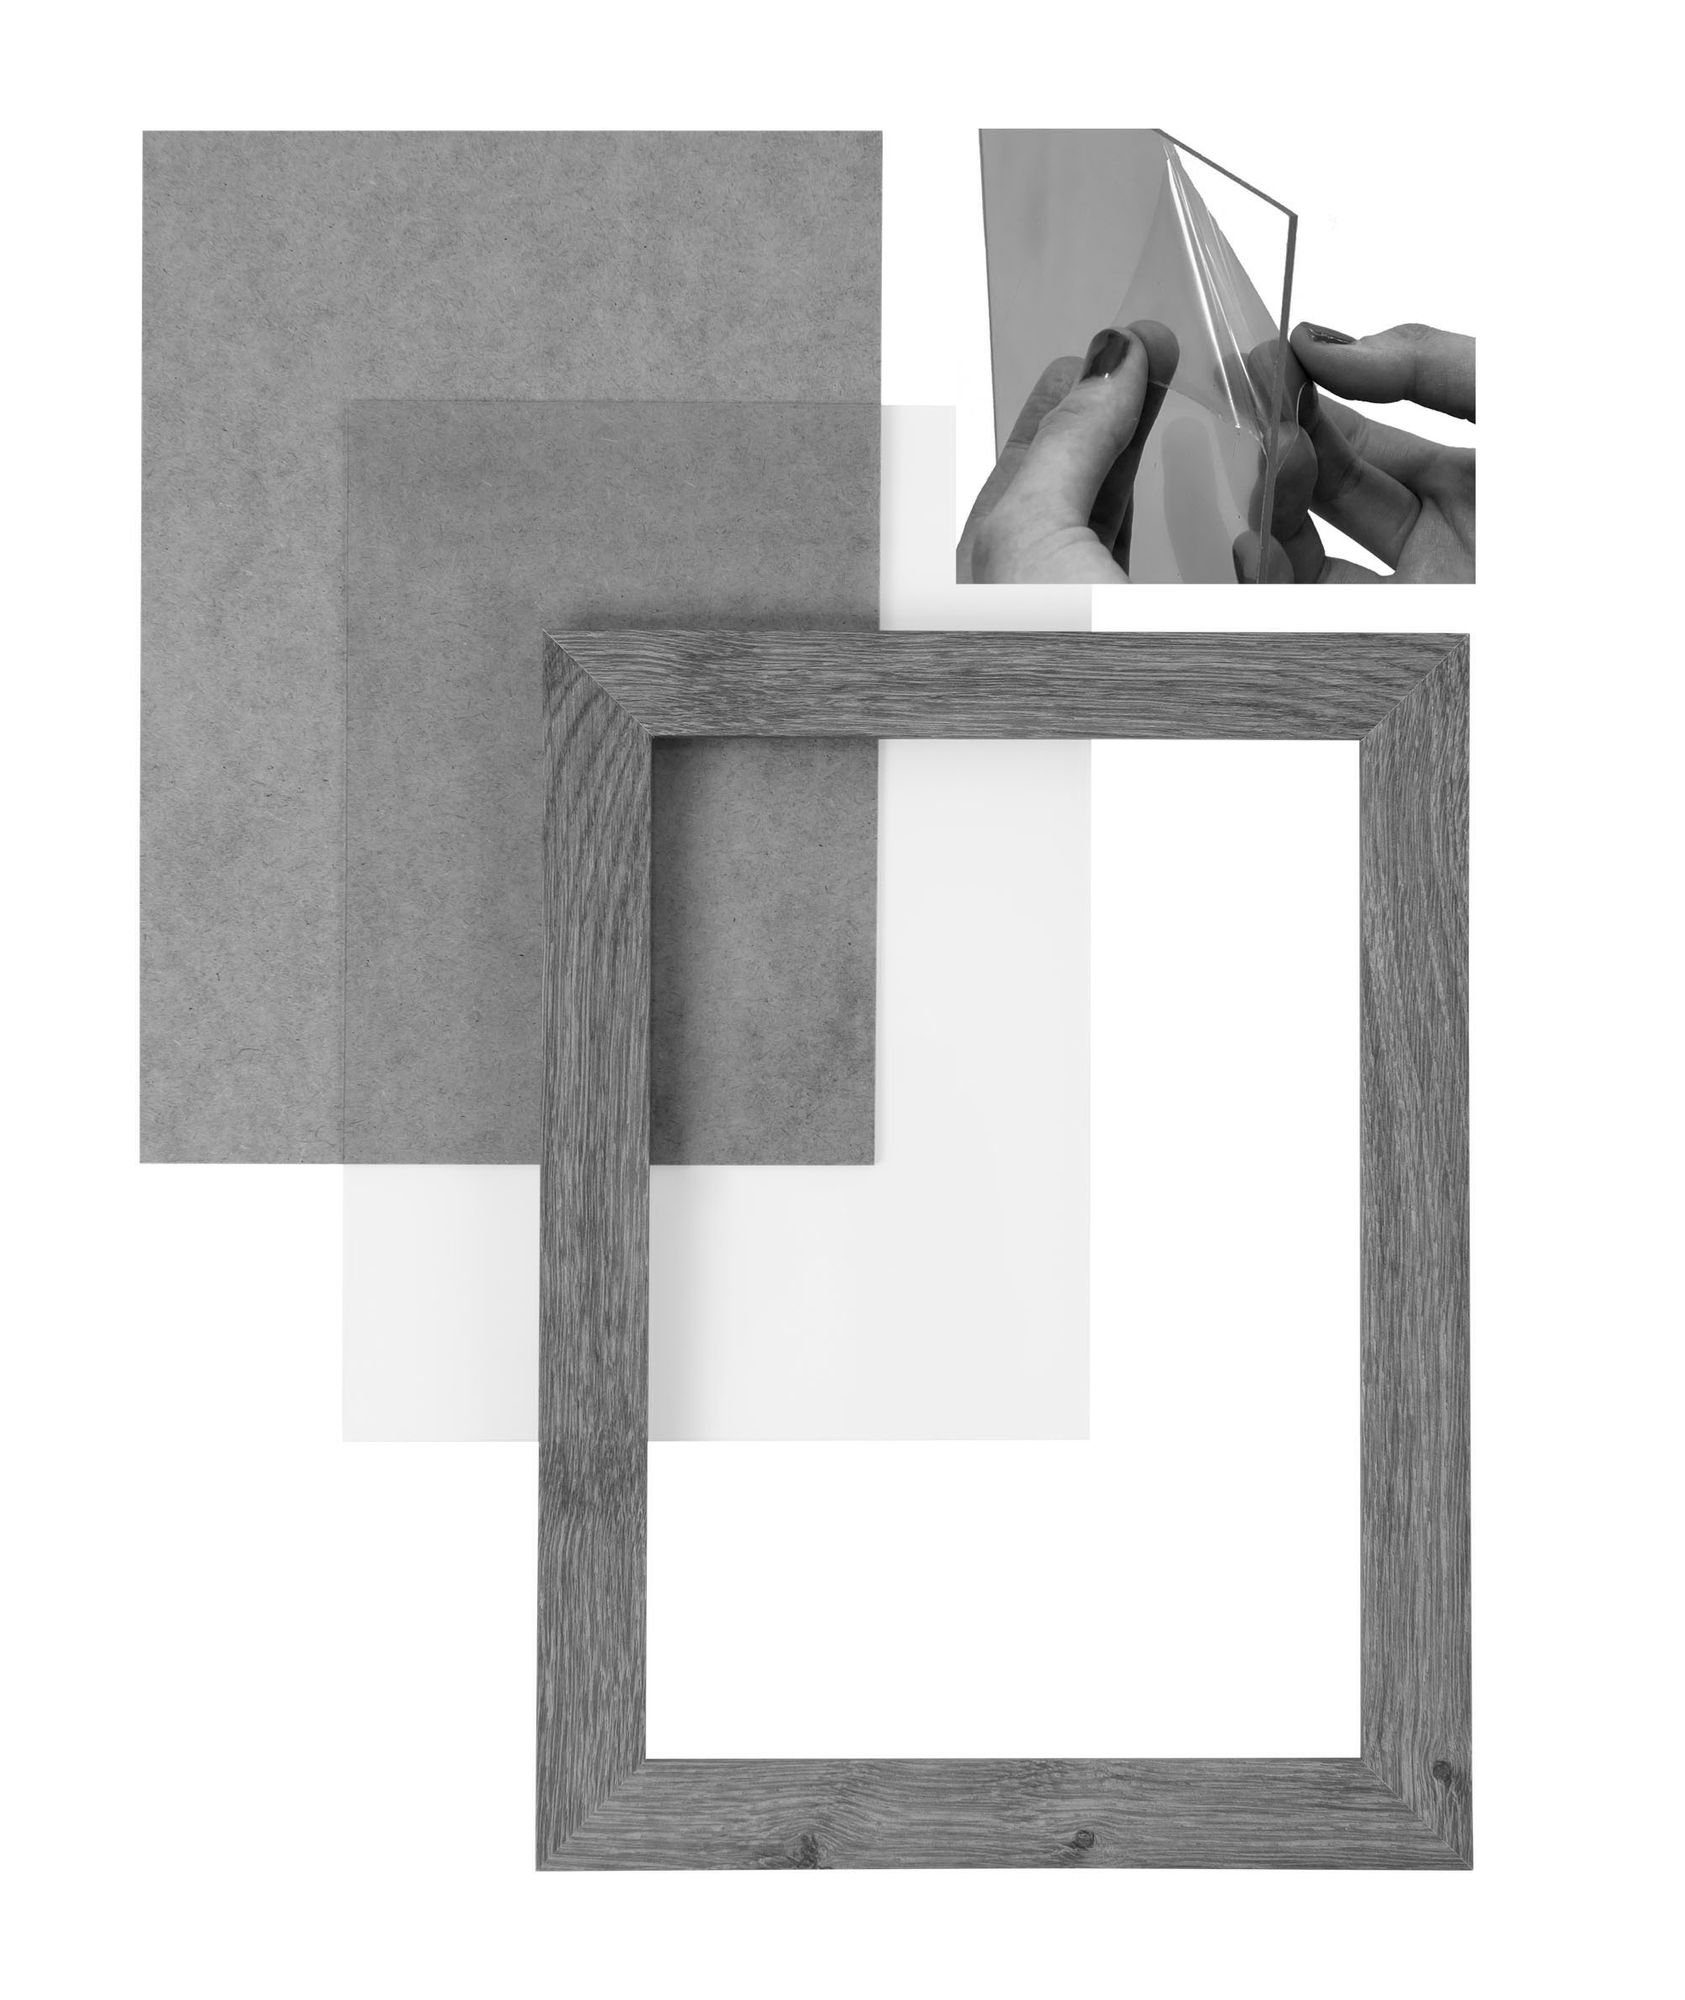 Clamaro Bilderrahmen Rahmen und nach in Aufhänger Rückwand CLAMARO 32x68,5 'Collage' handgefertigt silber gebürstet MDF Maß Bilderrahmen Acrylglas, eckiger Holz FSC® inkl. Moderner